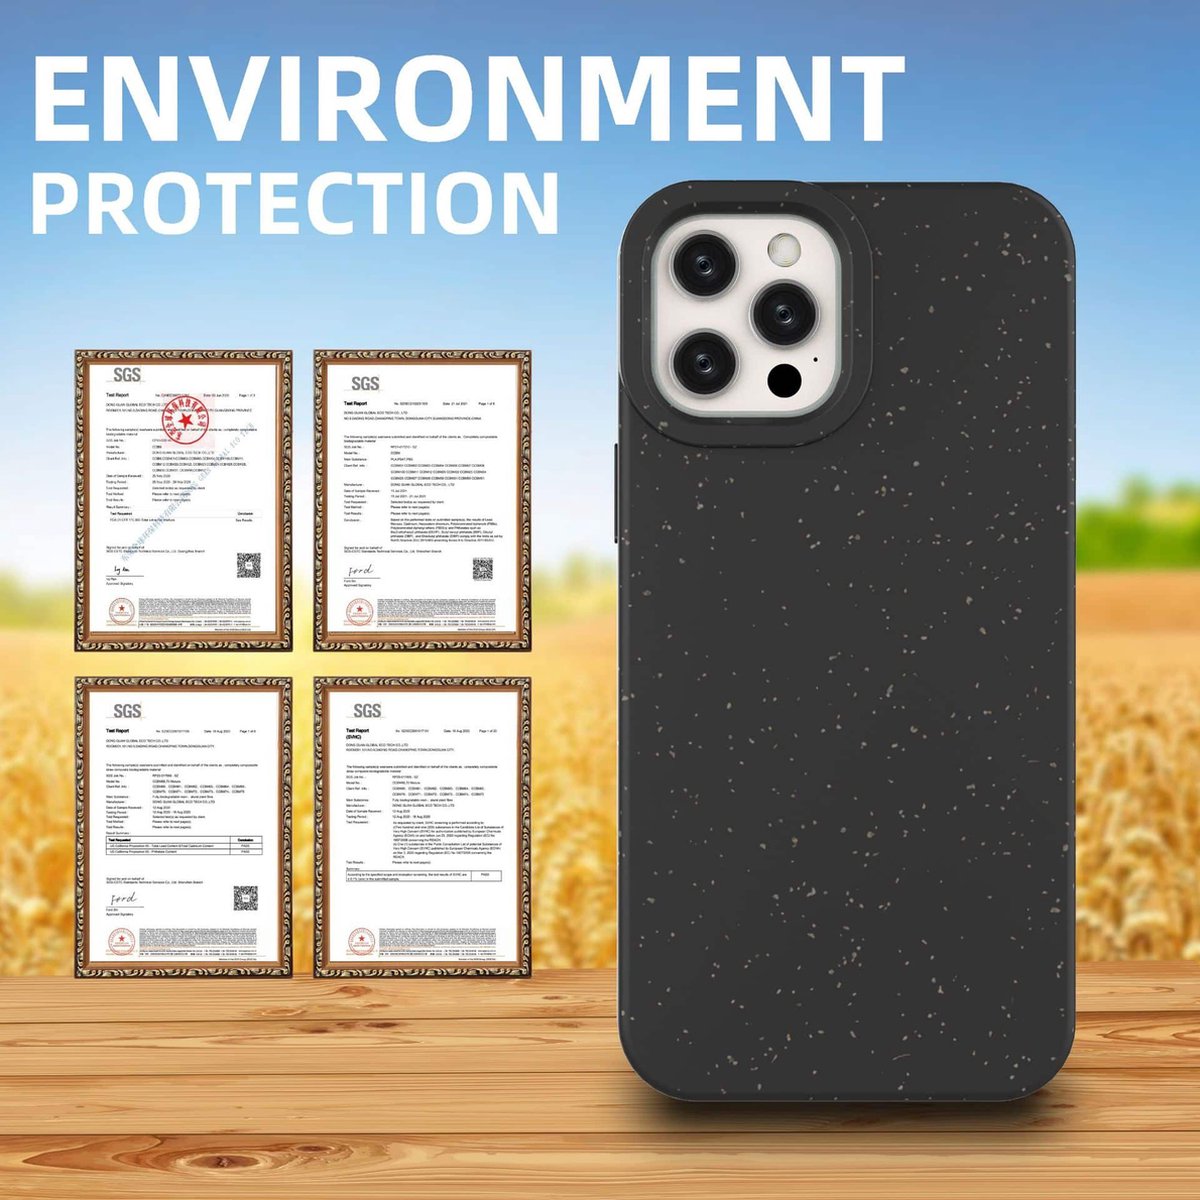 iPhone 12/12 Pro case 100% plastic vrij en biologisch afbreekbaar - donkergroen